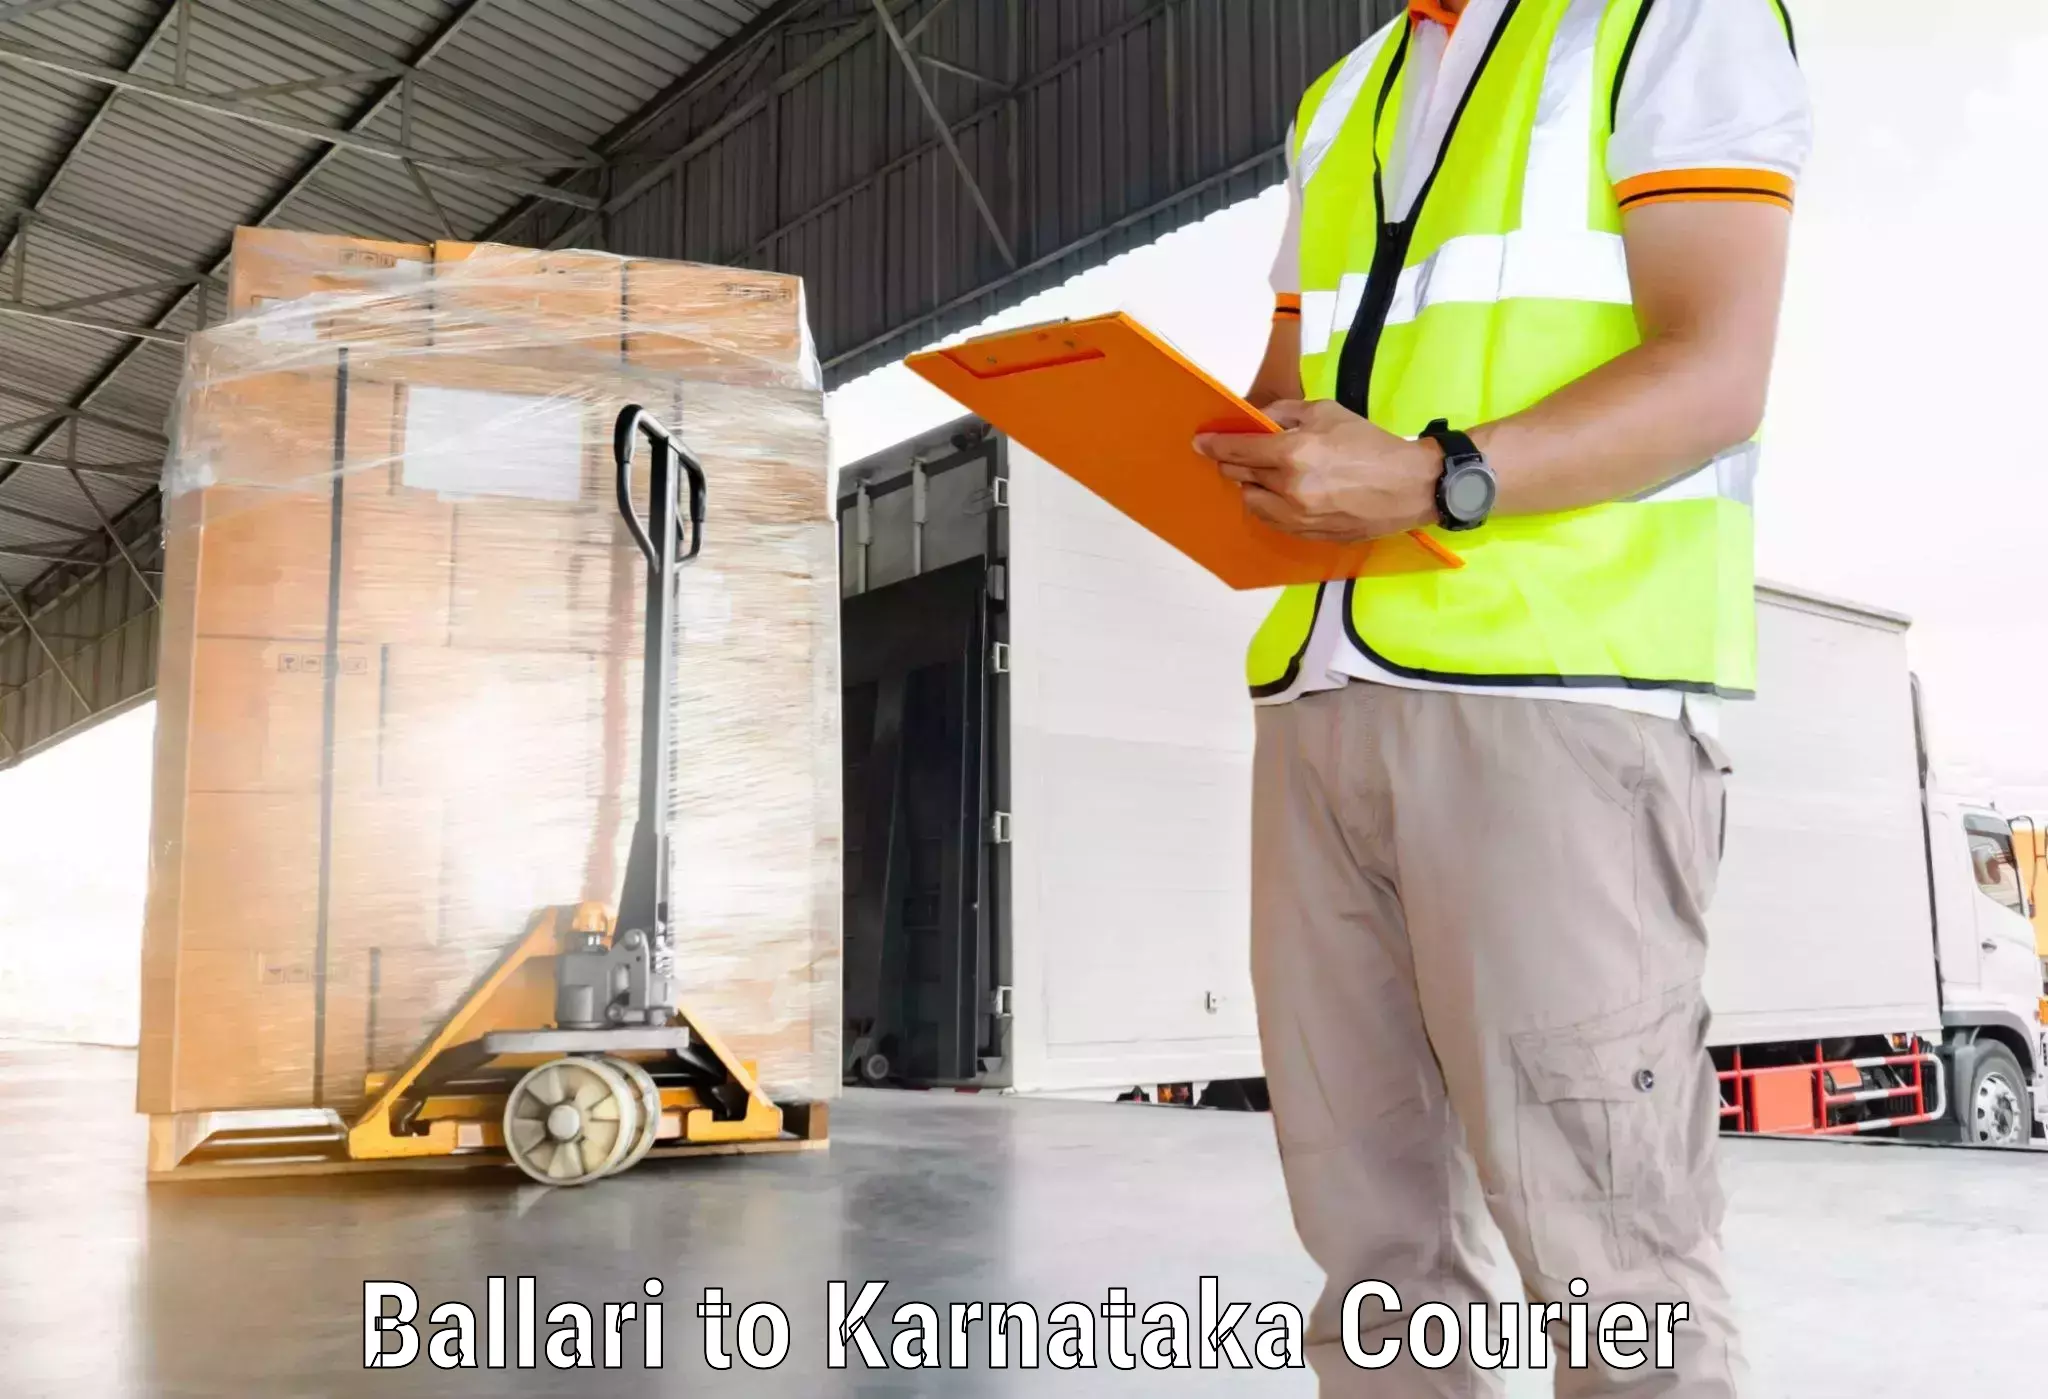 Fast delivery service in Ballari to Honnali